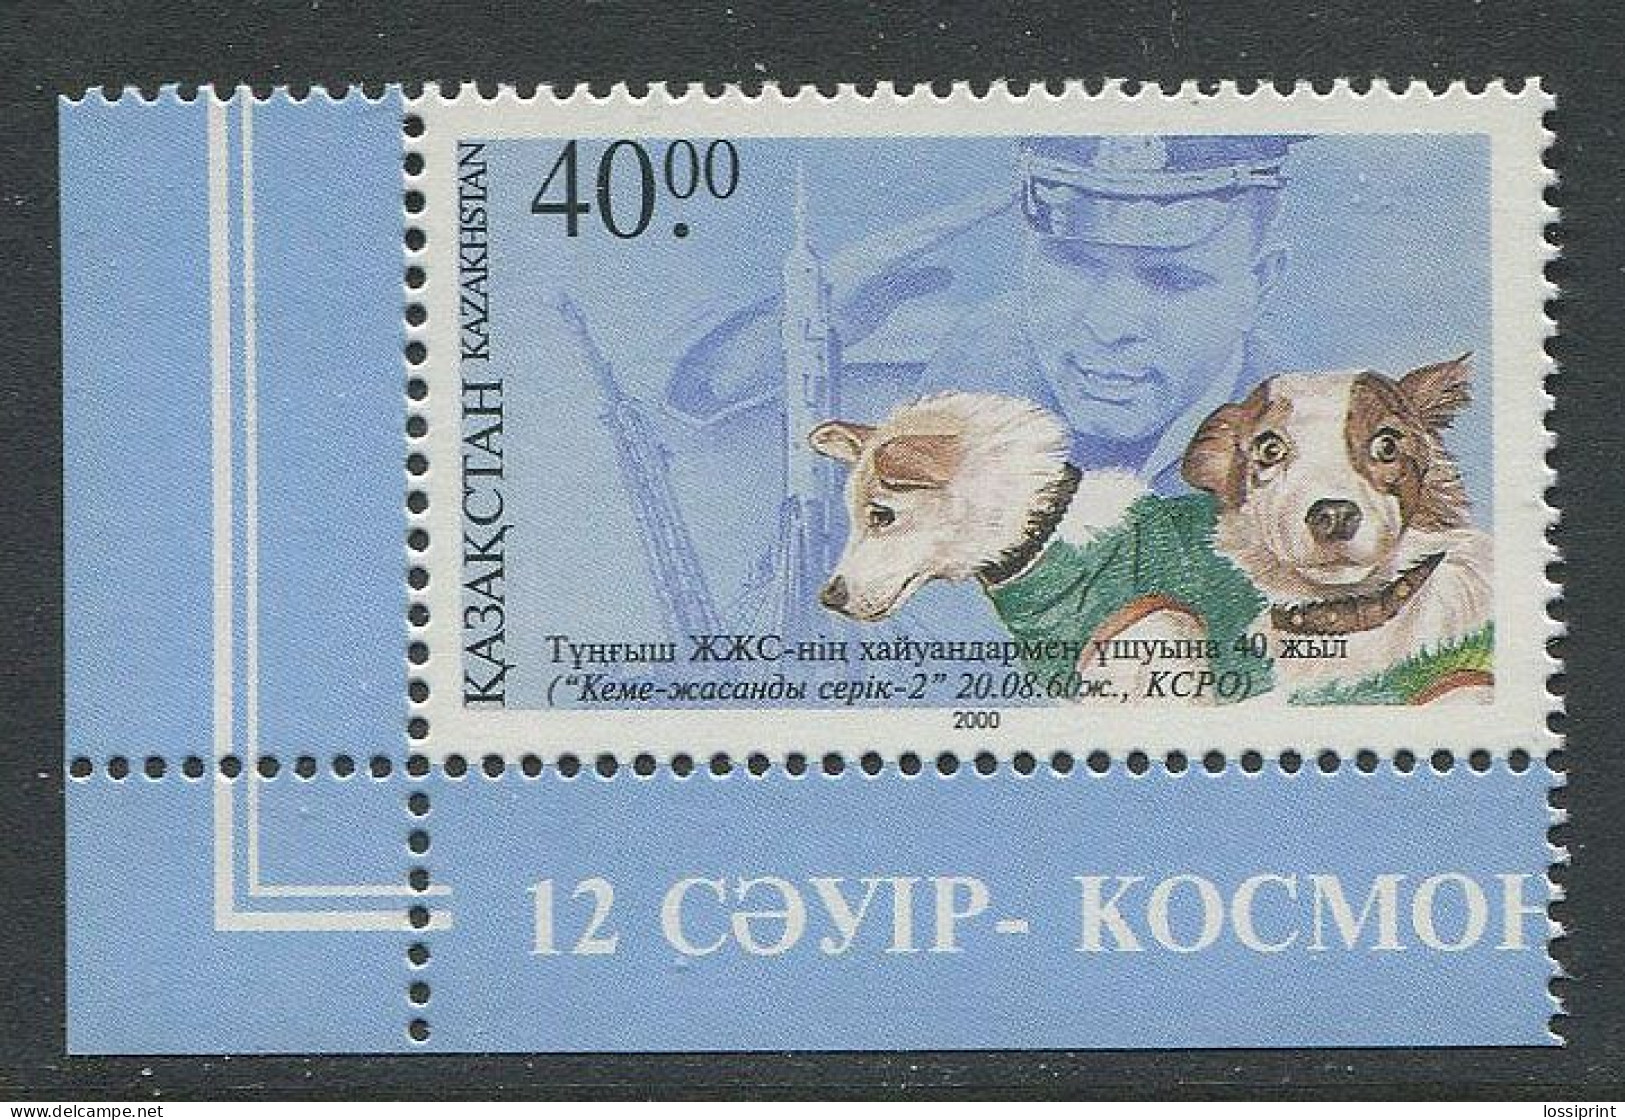 Kazakhstan:Unused Stamp Dog Laika And Belka And Cosmonaut Juri Gagrin, 2000, MNH, Corner - Kazakhstan